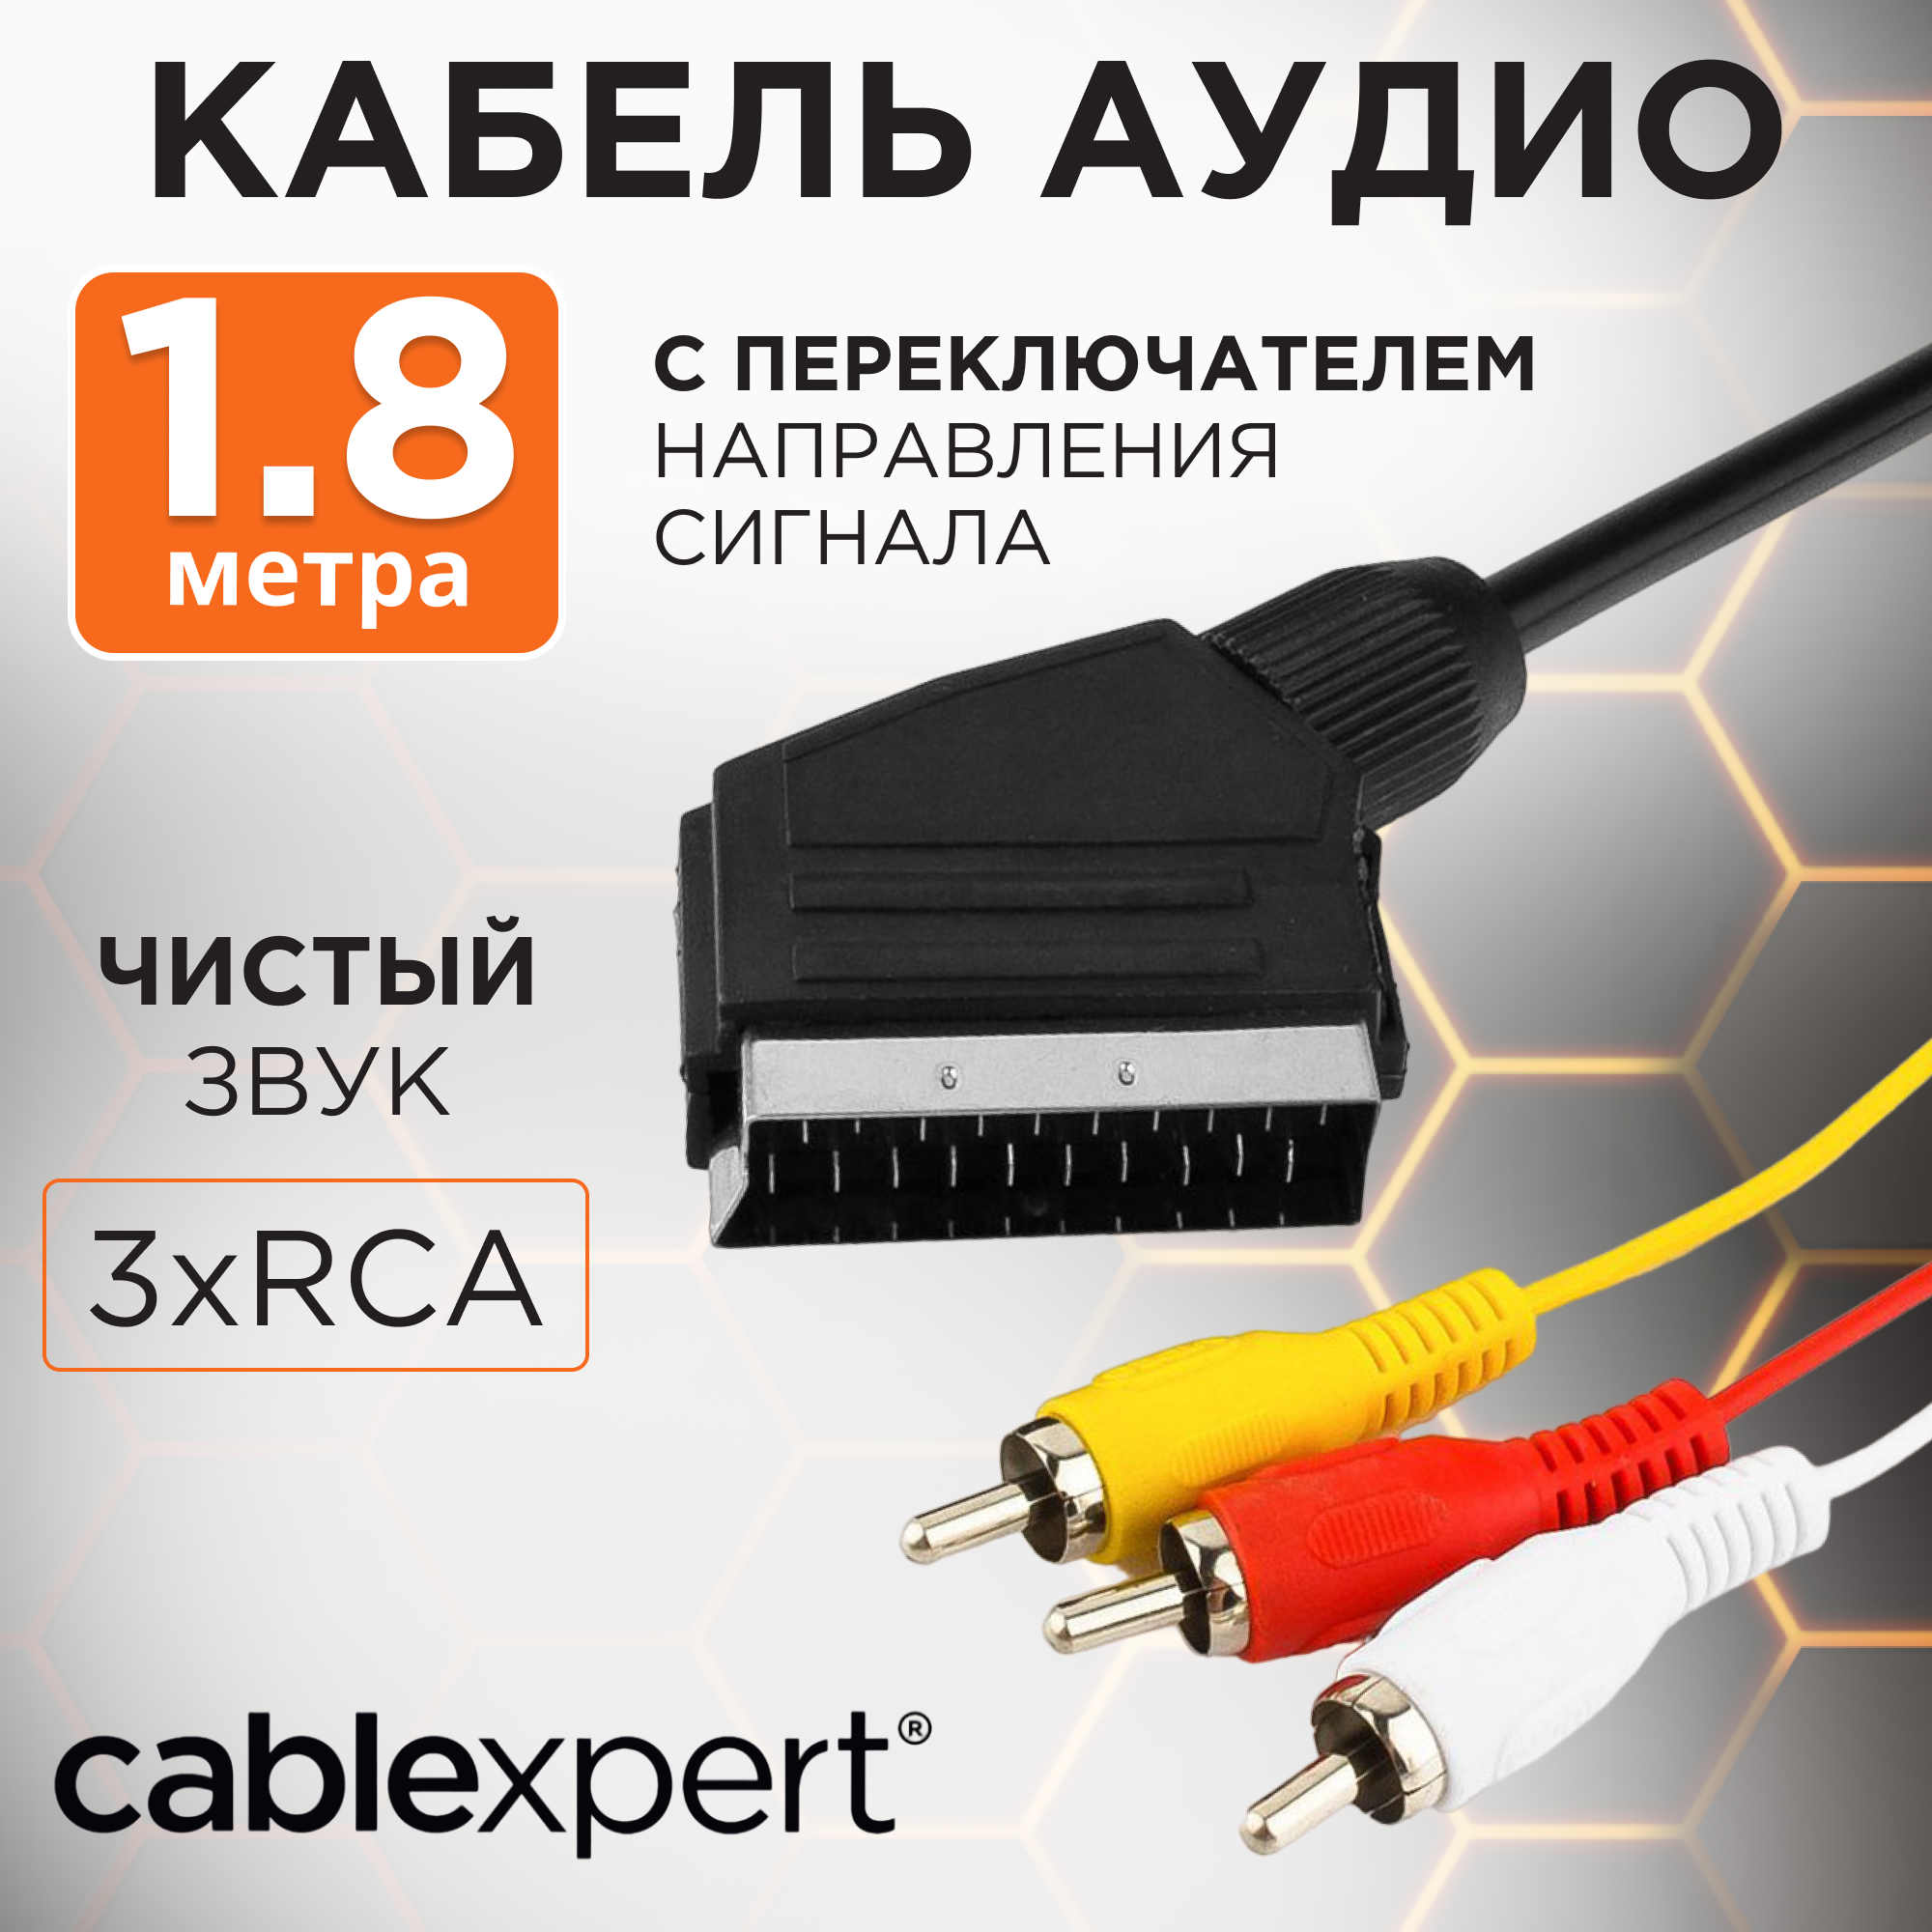 Кабель Cablexpert SCART - 3xRCA (CCV-519-001), 1.8 м, черный Gembird - фото №1